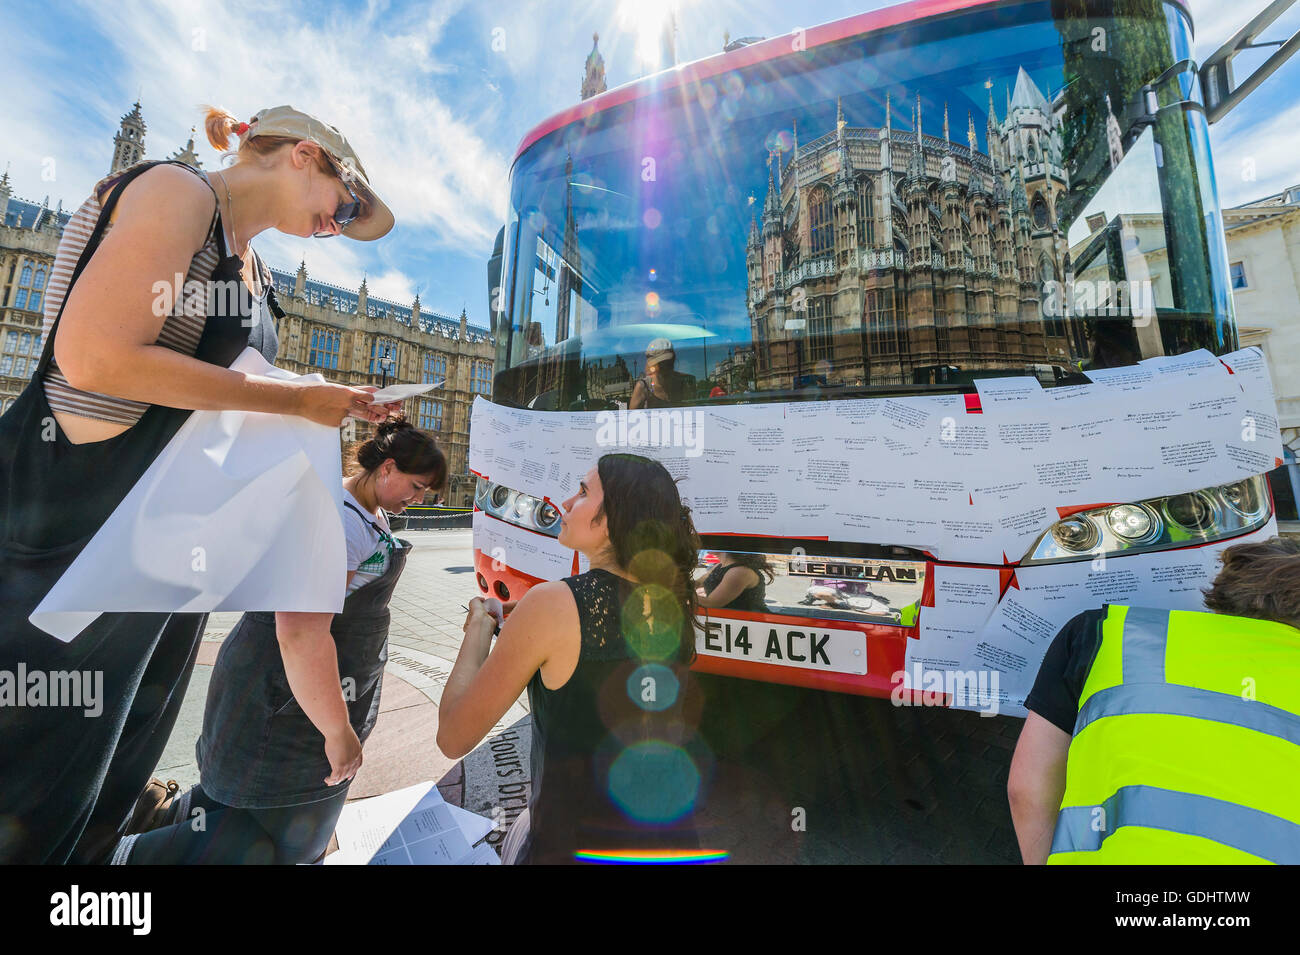 Londra, Regno Unito. 18 Luglio, 2016. La parte anteriore del bus è coperto in messaggi - La Brexit 'voto lasciare' battaglia bus (utilizzato da Boris Johnson) è stata acquisita da Greenpeace è stato ri-branded al di fuori del Parlamento. Il £350m NHS rivendicazione è stata coperta con migliaia di domande per il nuovo governo da lasciare e rimanere elettori - molti di loro cosa Brexit mezzi per l'ambiente. Le domande scritte su adesivi, stanno formando un montaggio che illustrerà le parole 'tempo di verità" in grandi lettere bianche sul lato del bus. Il bus è stata parcheggiata da Palazzo Vecchio Cantiere, Westminster. © Guy Bell/Alamy vivere N Foto Stock